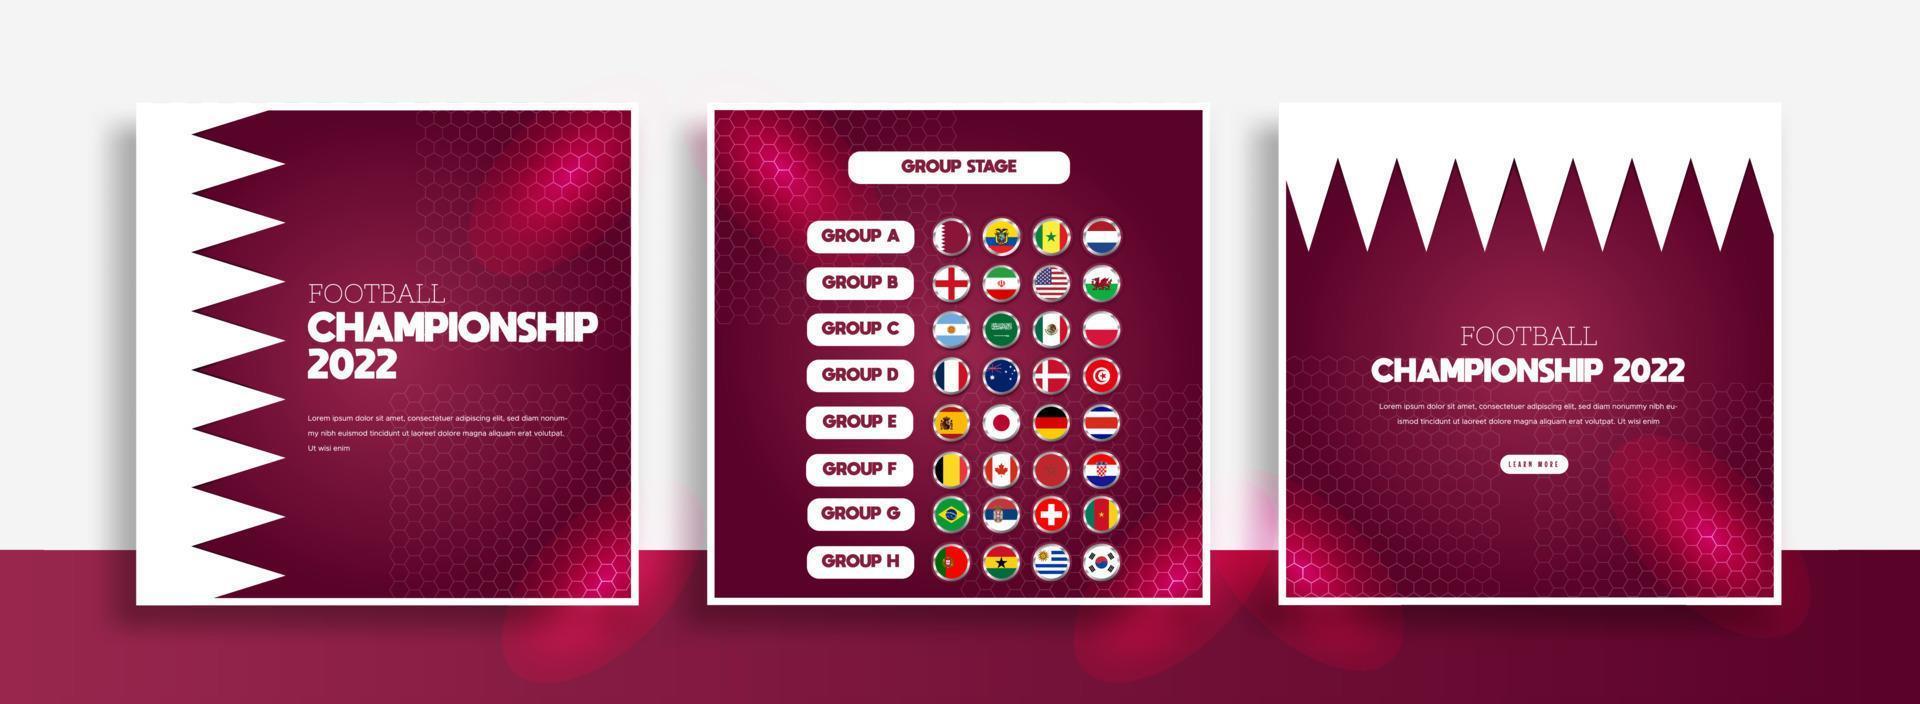 modelo de banner de postagem de mídia social de torneio de futebol, copa de futebol, modelo de design de plano de fundo, ilustração vetorial, 2022 vetor